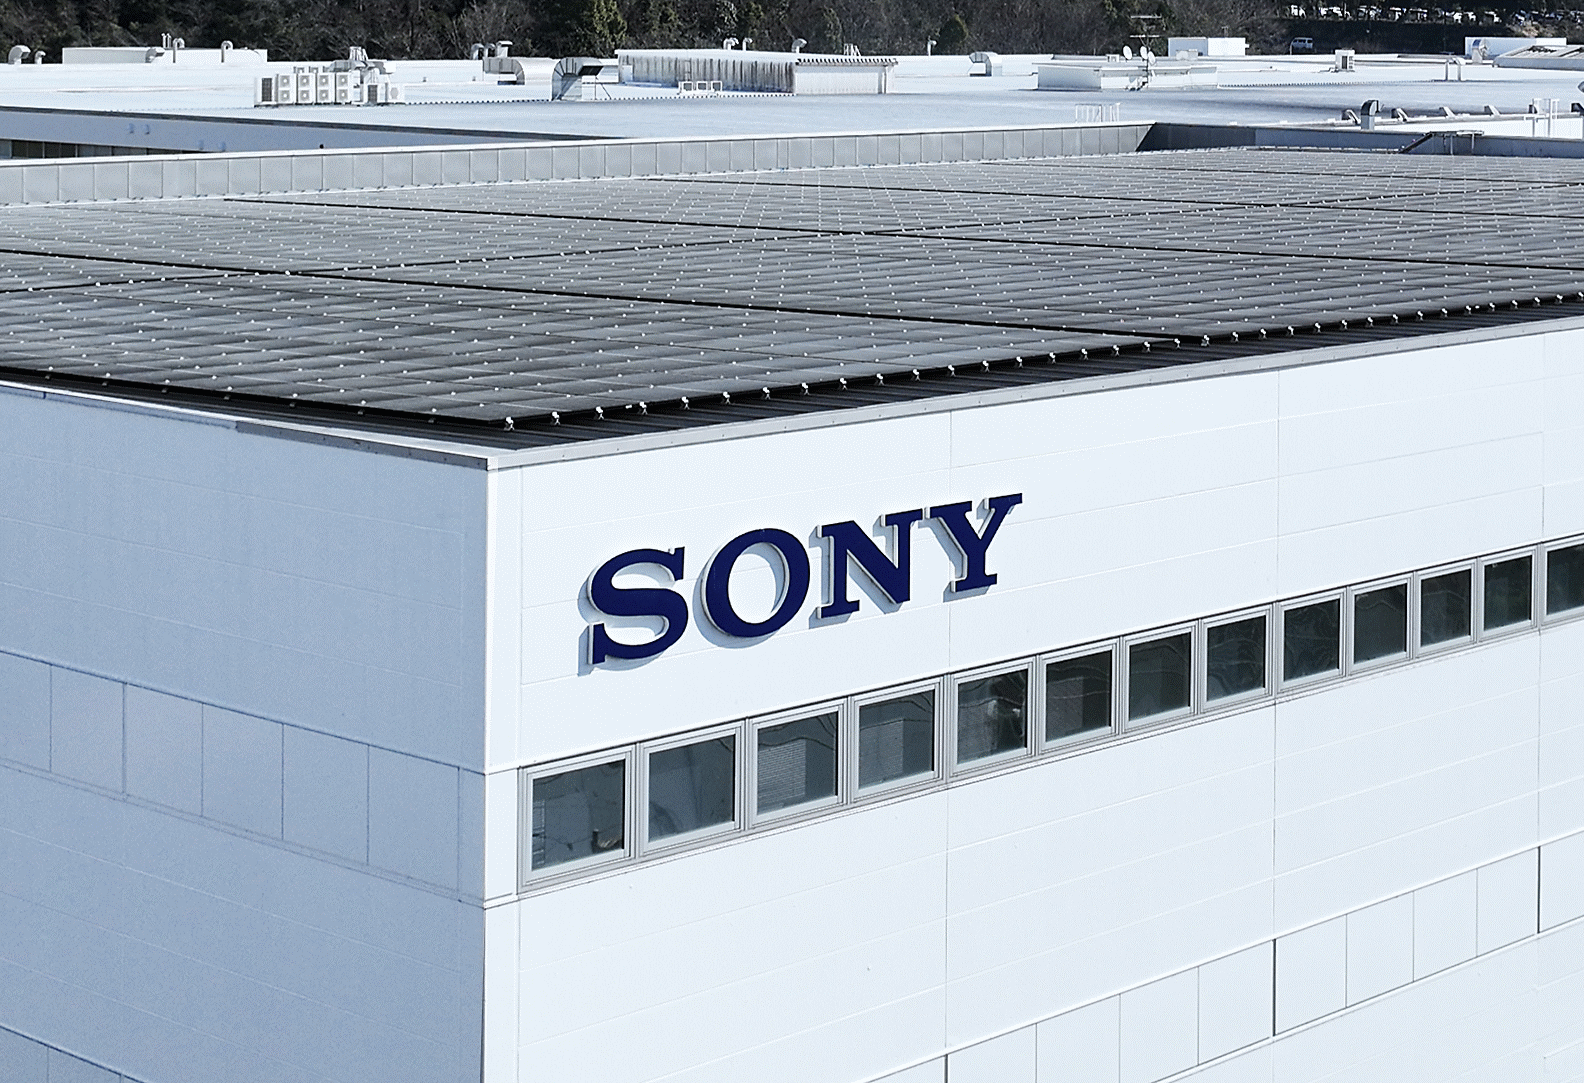 Photo du toit de l'usine couvert de panneaux solaires et du logo « SONY »